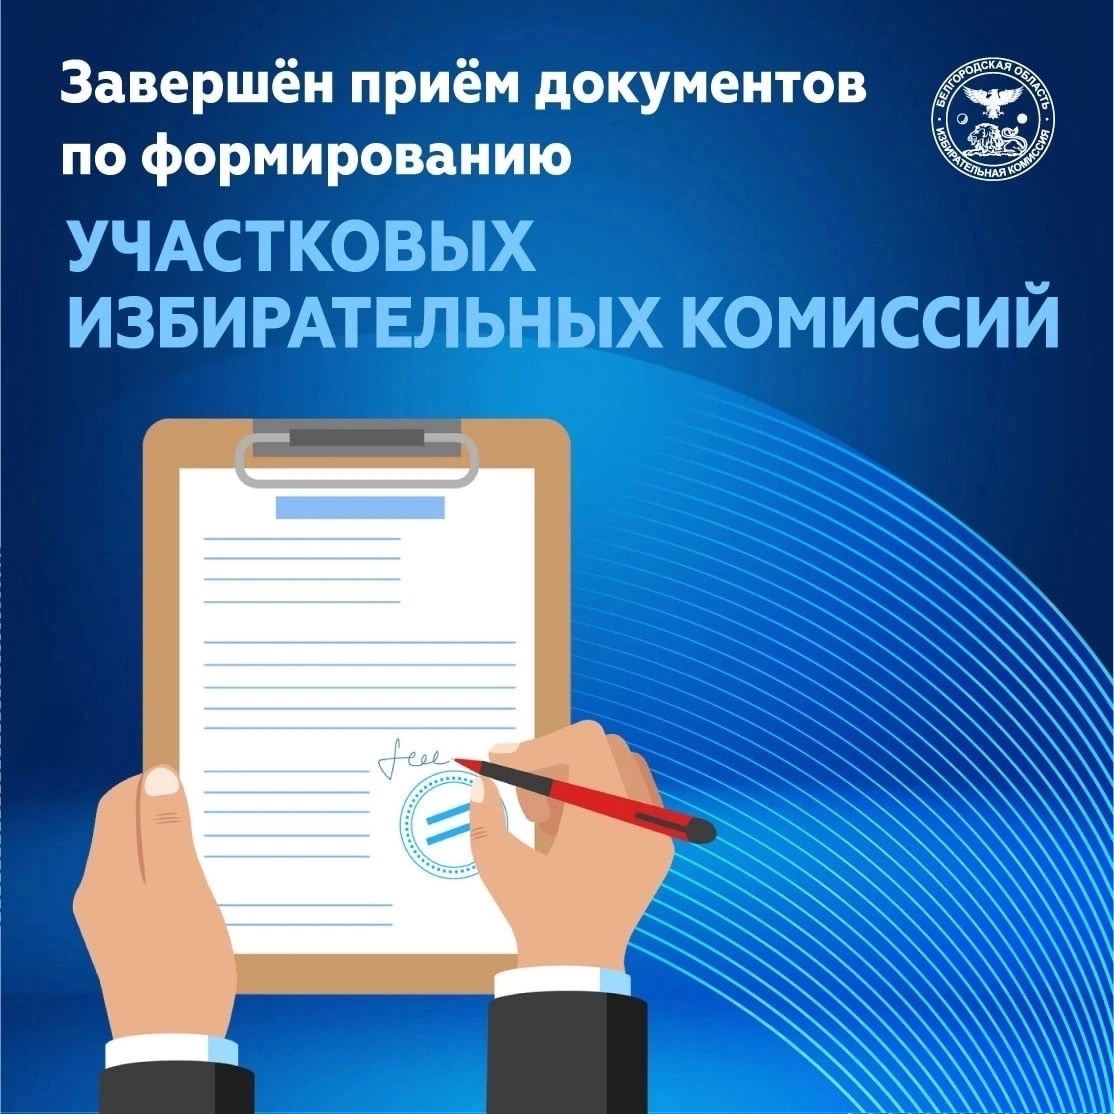 30 апреля в Яковлевском городском округе завершился приём предложений в составы участковых избирательных комиссий сроком полномочий 2023-2028 годов..